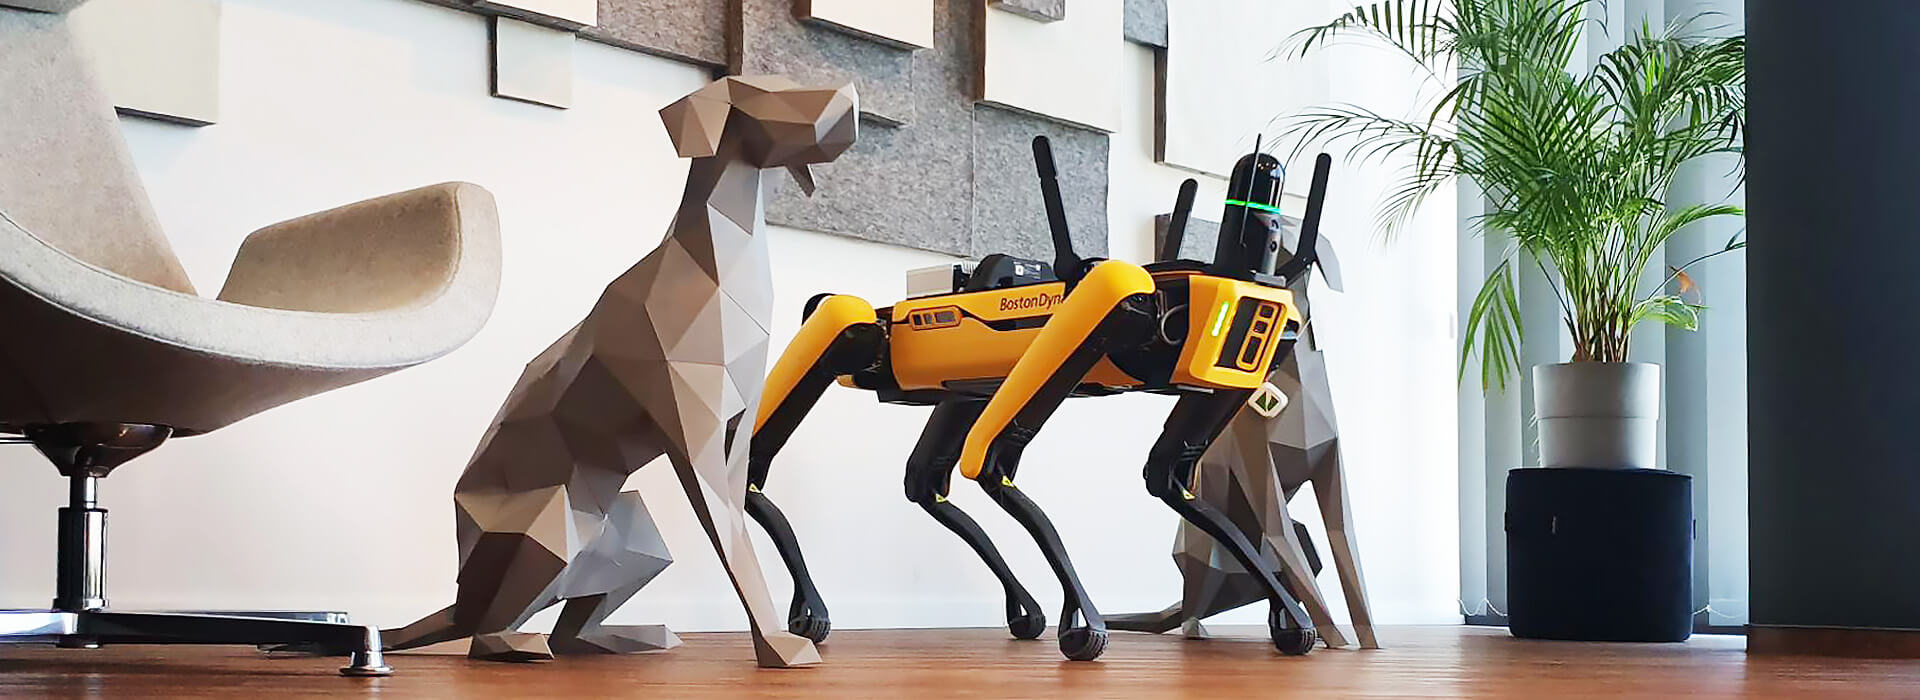 Spot, a Boston Dynamics robotkutyája beszkenneli a BuildEXT budapesti irodáját